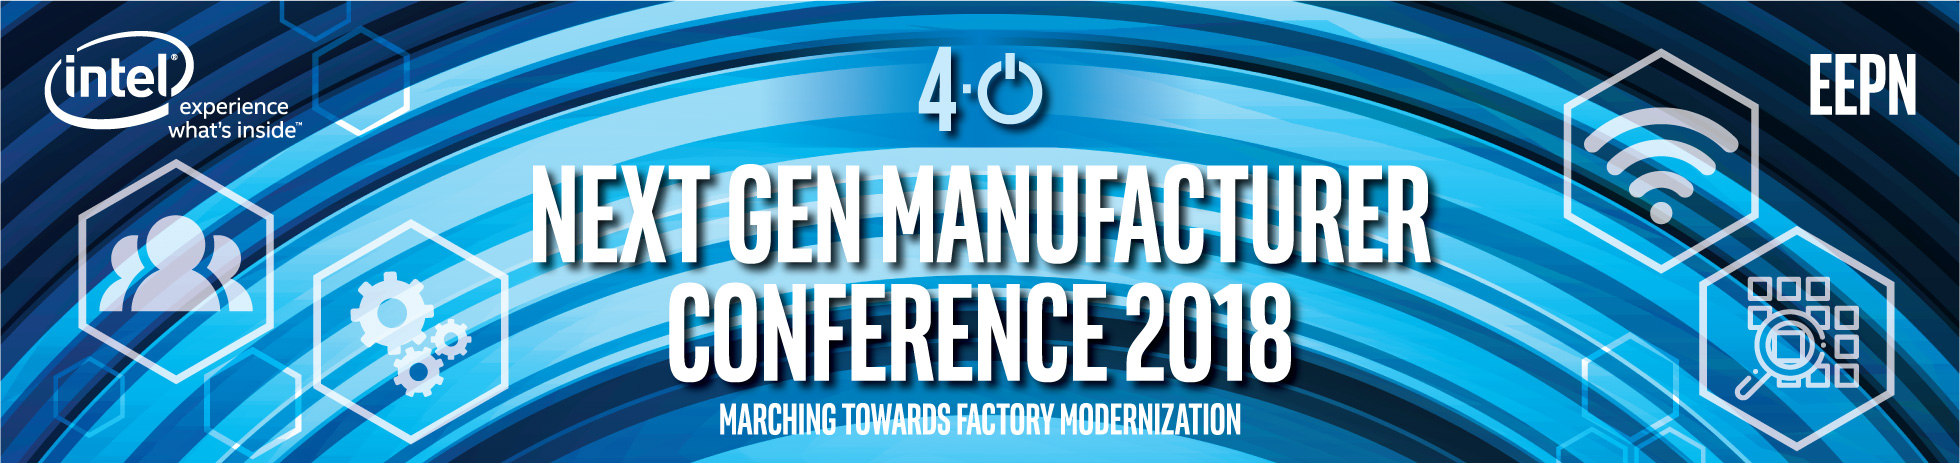 Next Gen Manufacturer Conference 2018